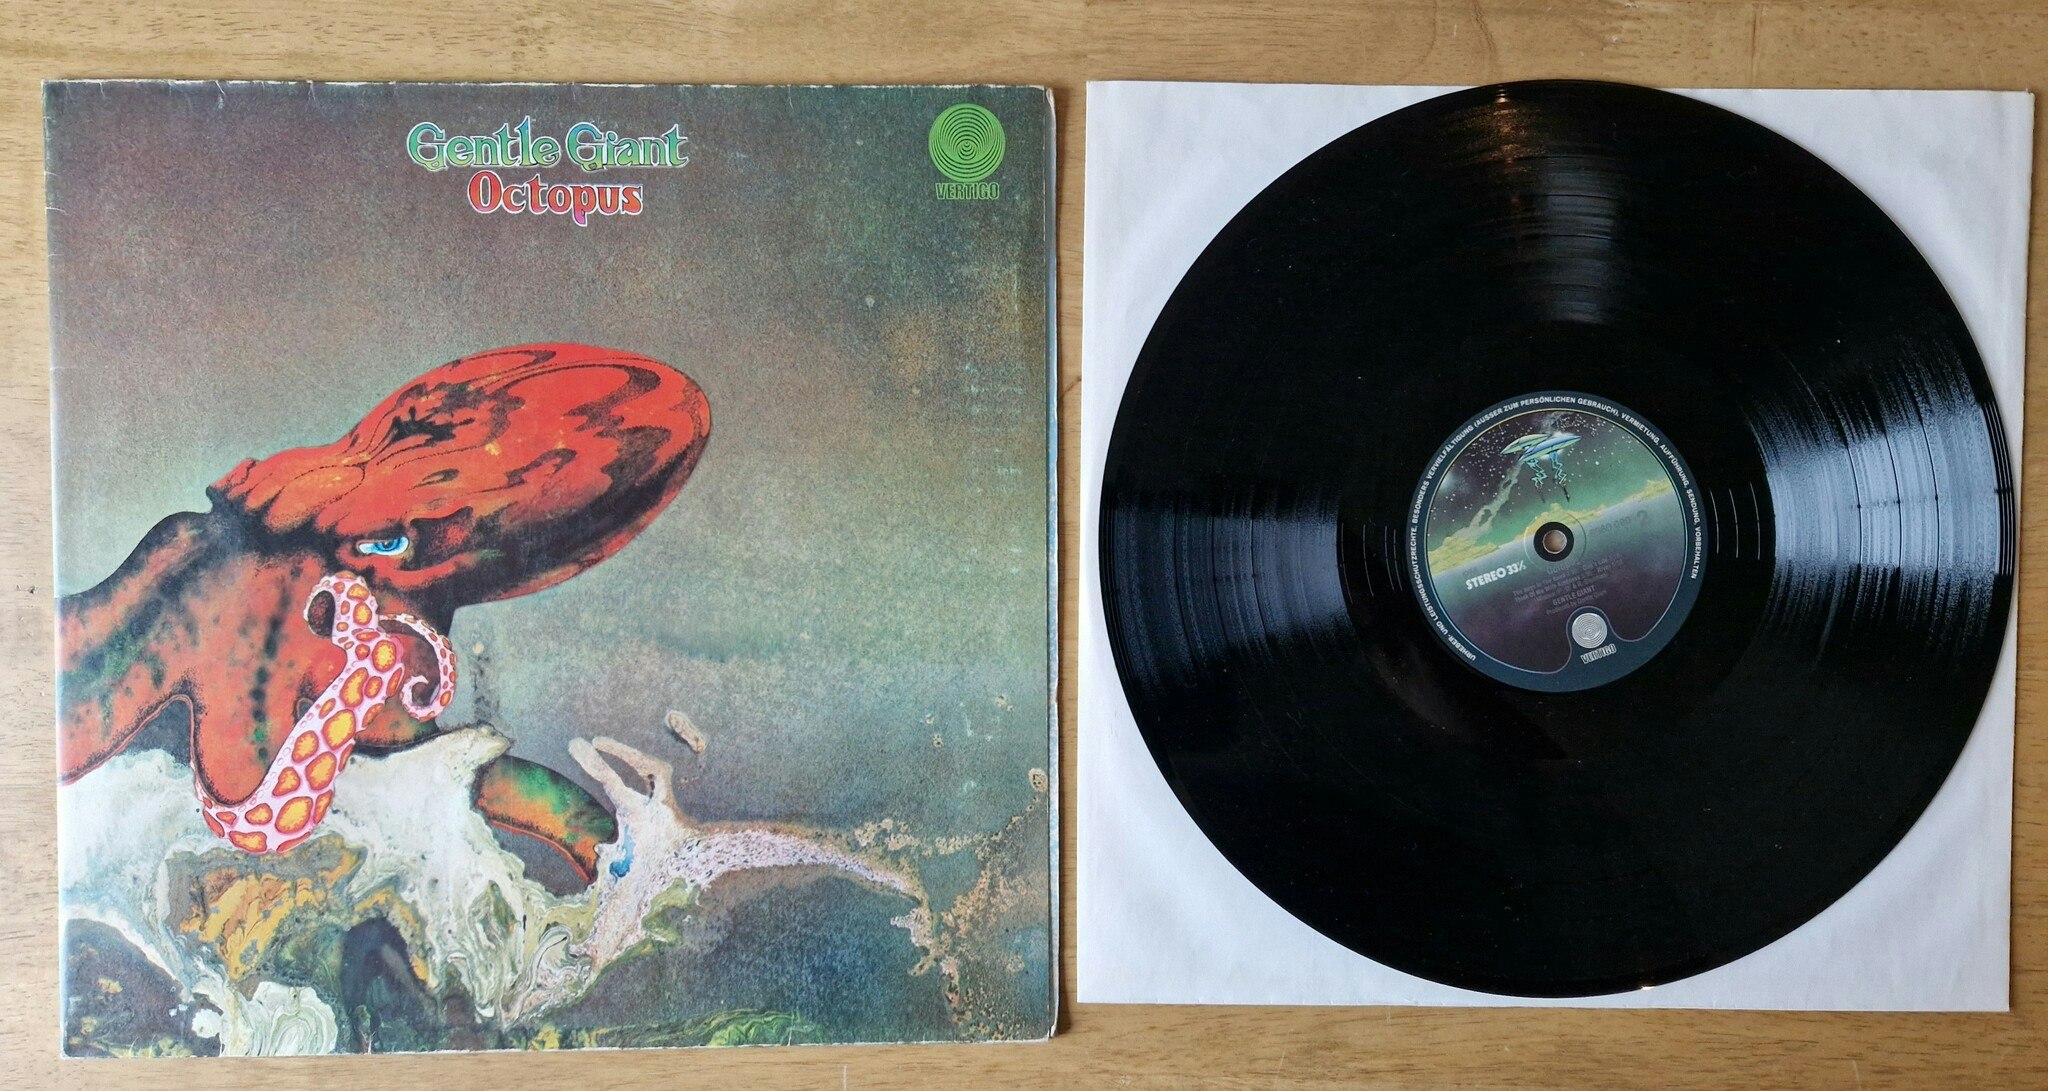 Gentle Giant, Octopus. Vinyl LP